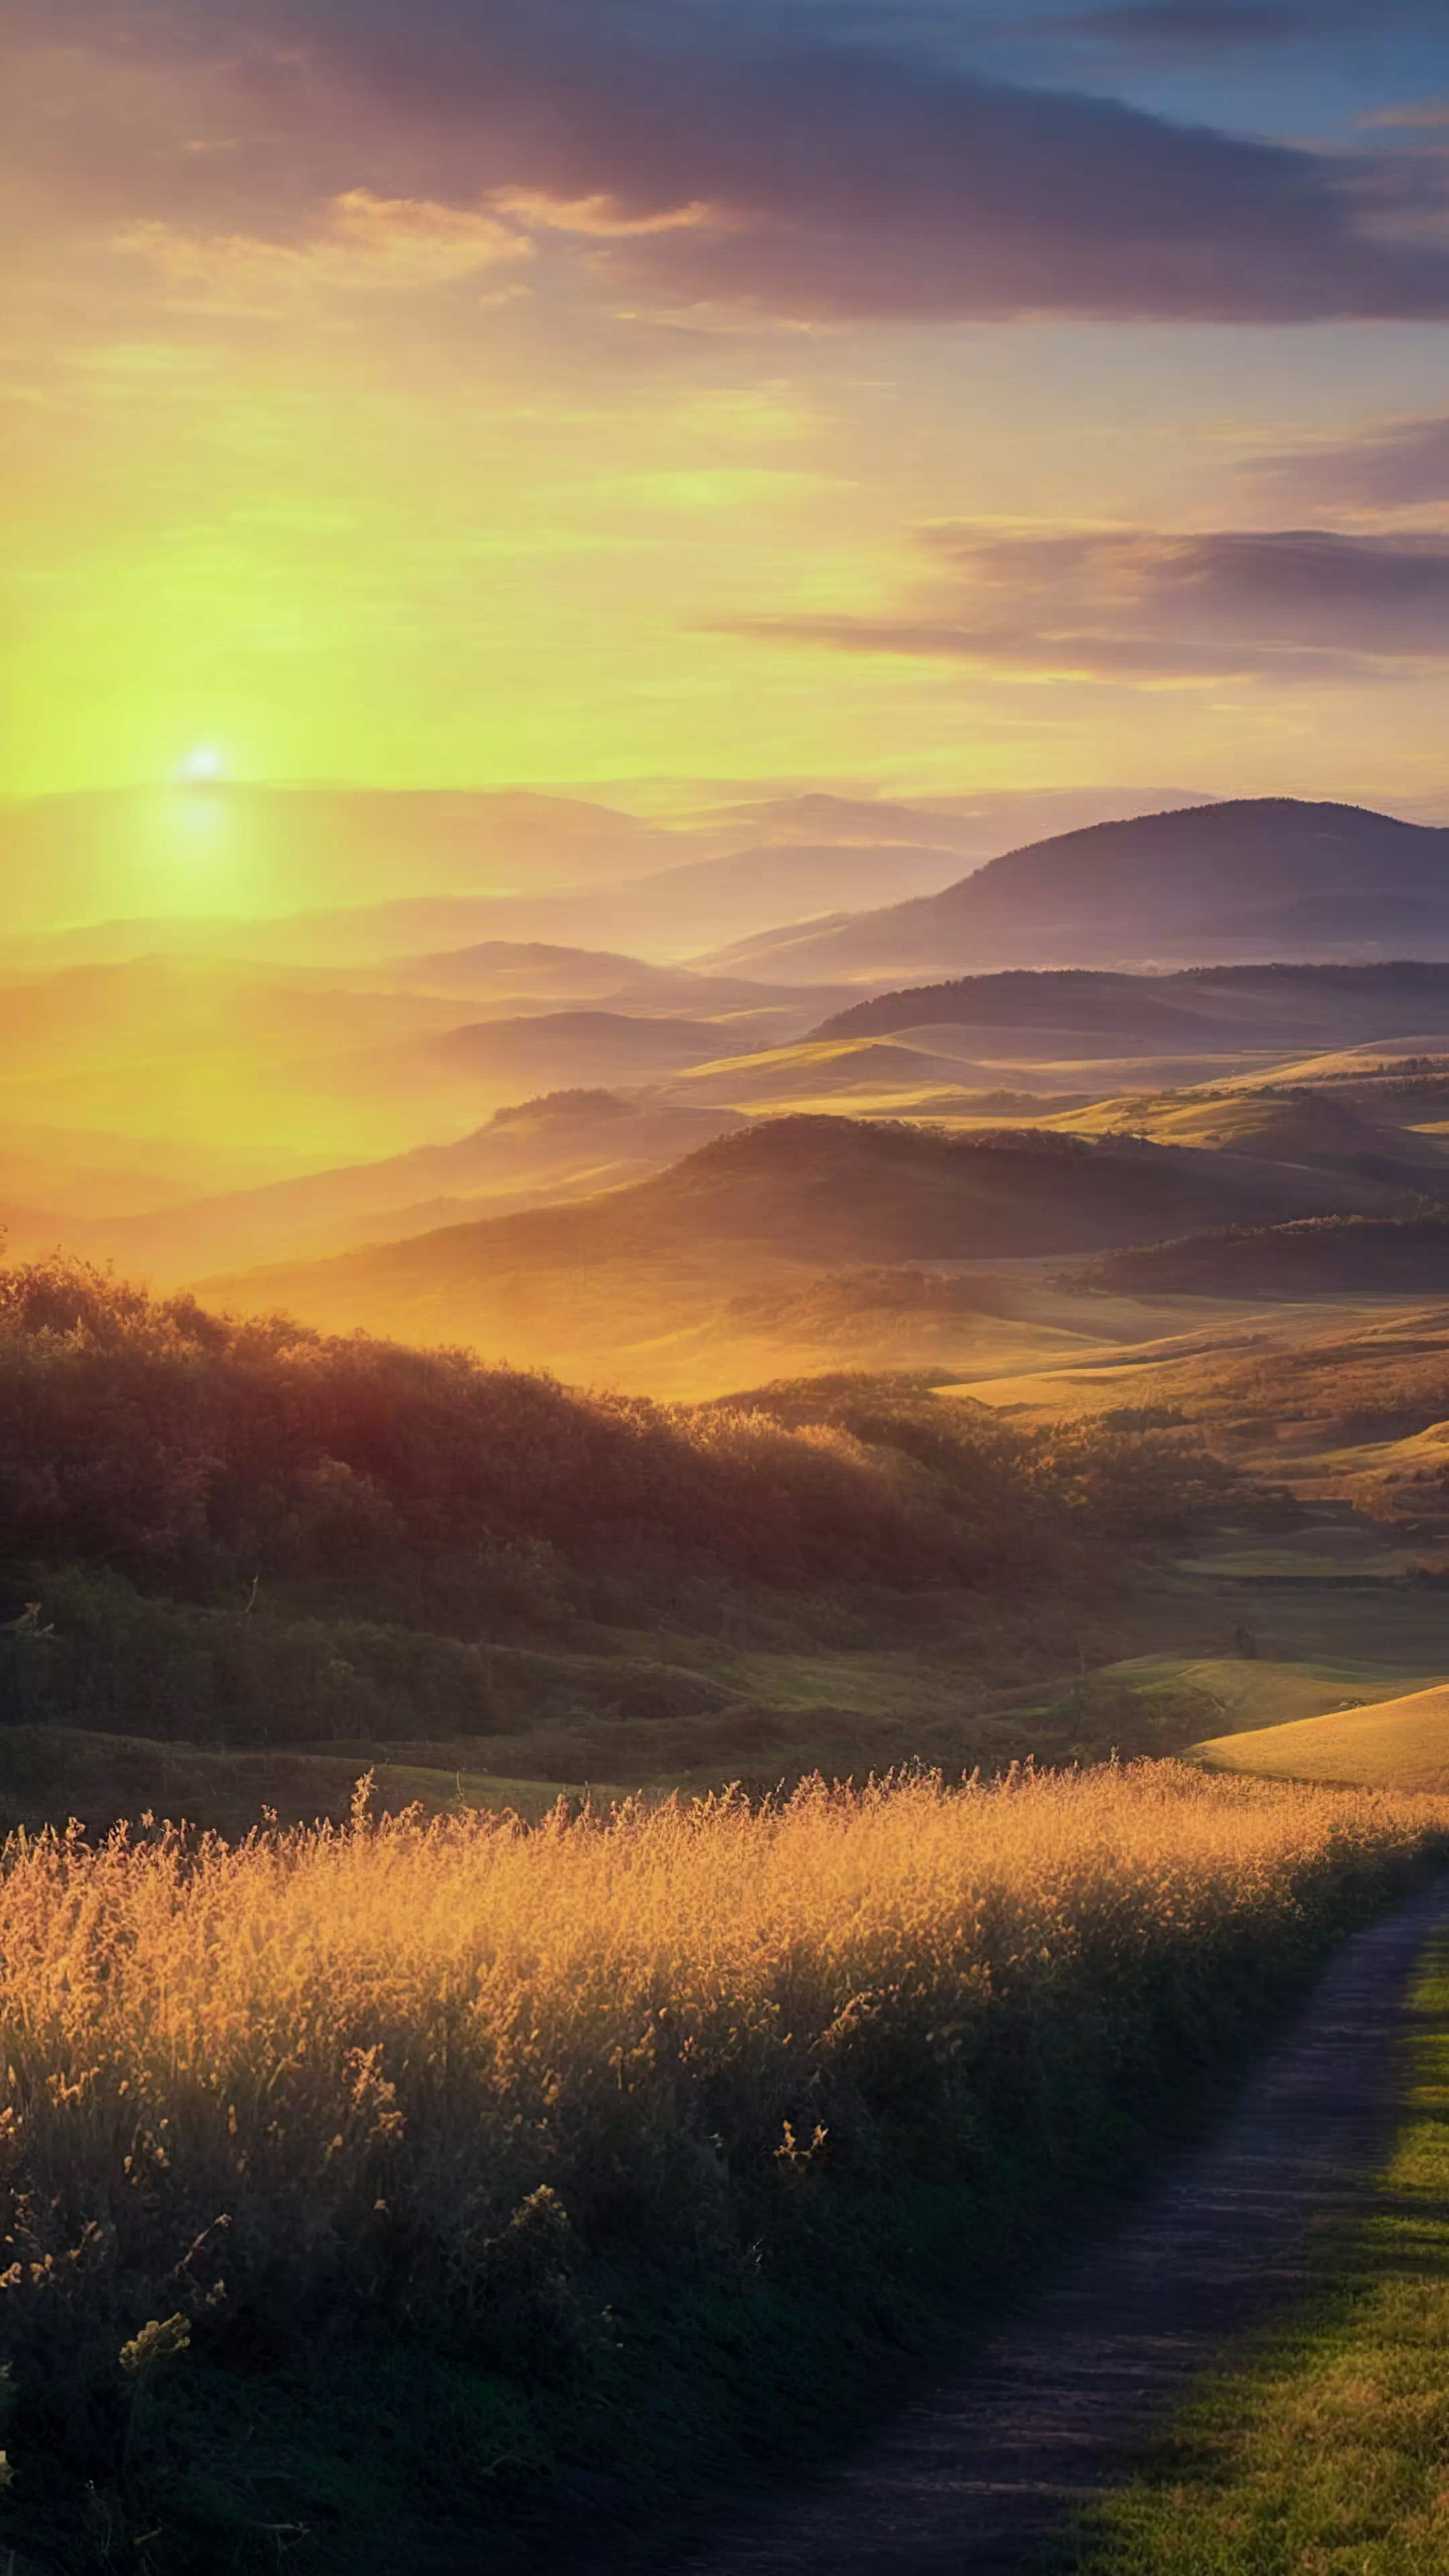 Transformez l'écran de votre appareil avec notre fond d'écran de nature en HD pour mobile, capturant un lever de soleil sur une campagne avec des collines ondulantes baignées d'une lueur dorée, et laissez votre appareil devenir un portail vers un matin serein à la campagne.